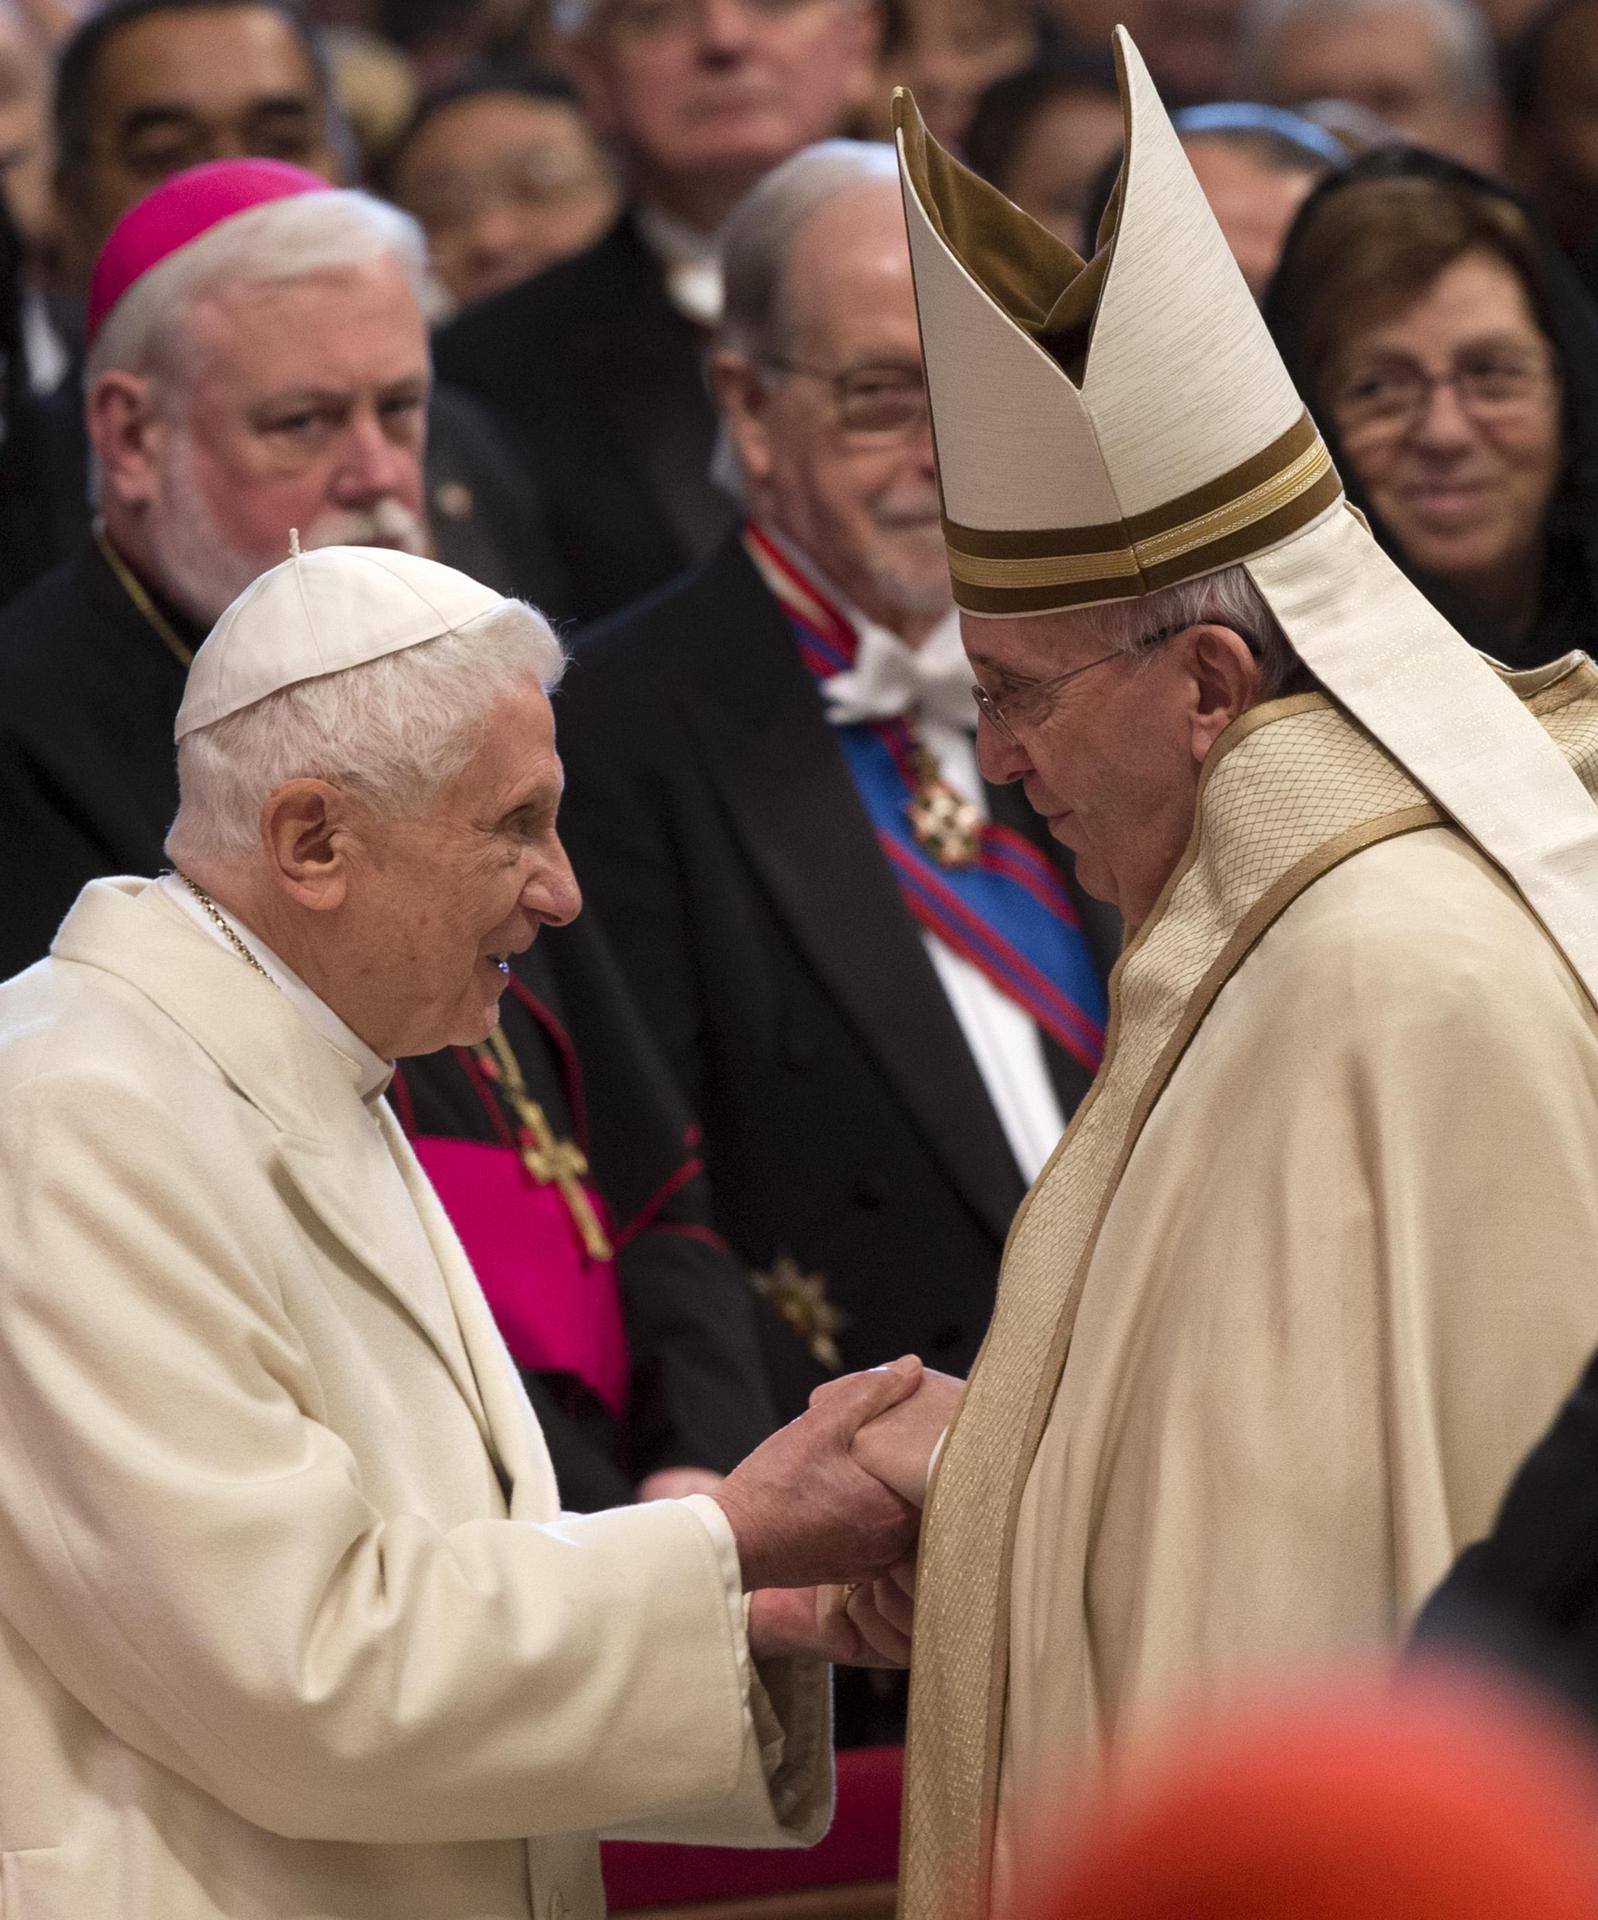 Commoció arreu del món per la mort del papa emèrit Benet XVI